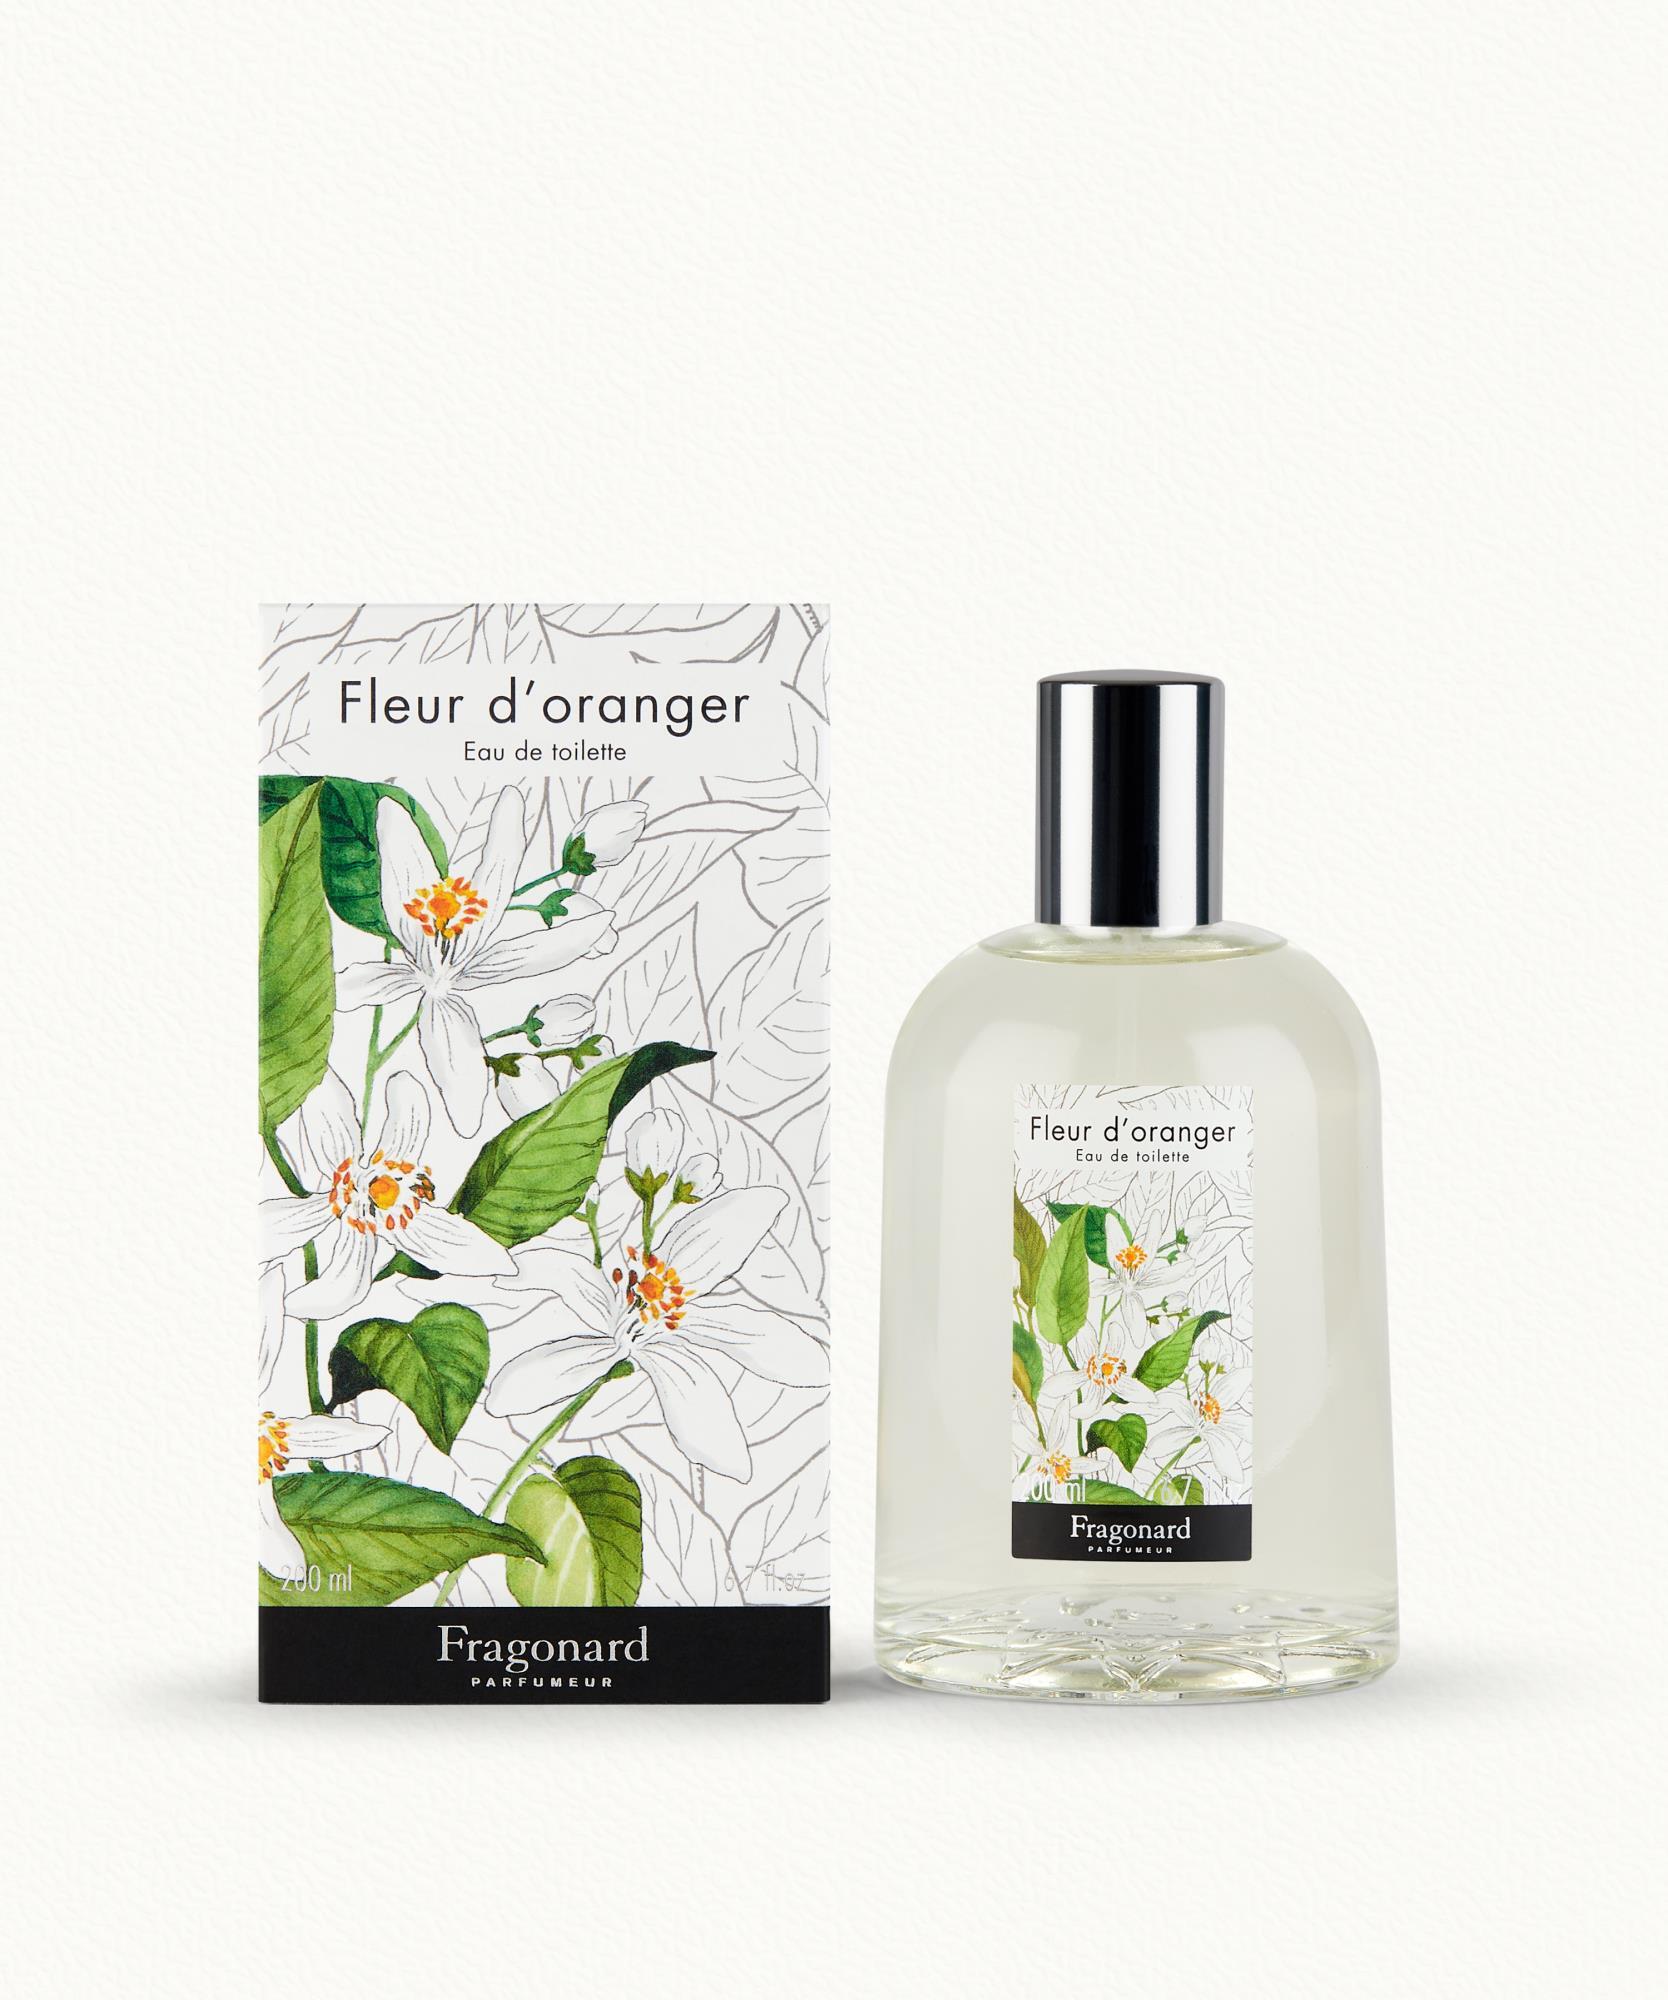 Huile Aromatique Fleur d'Oranger Huile Essentielle Soin- France